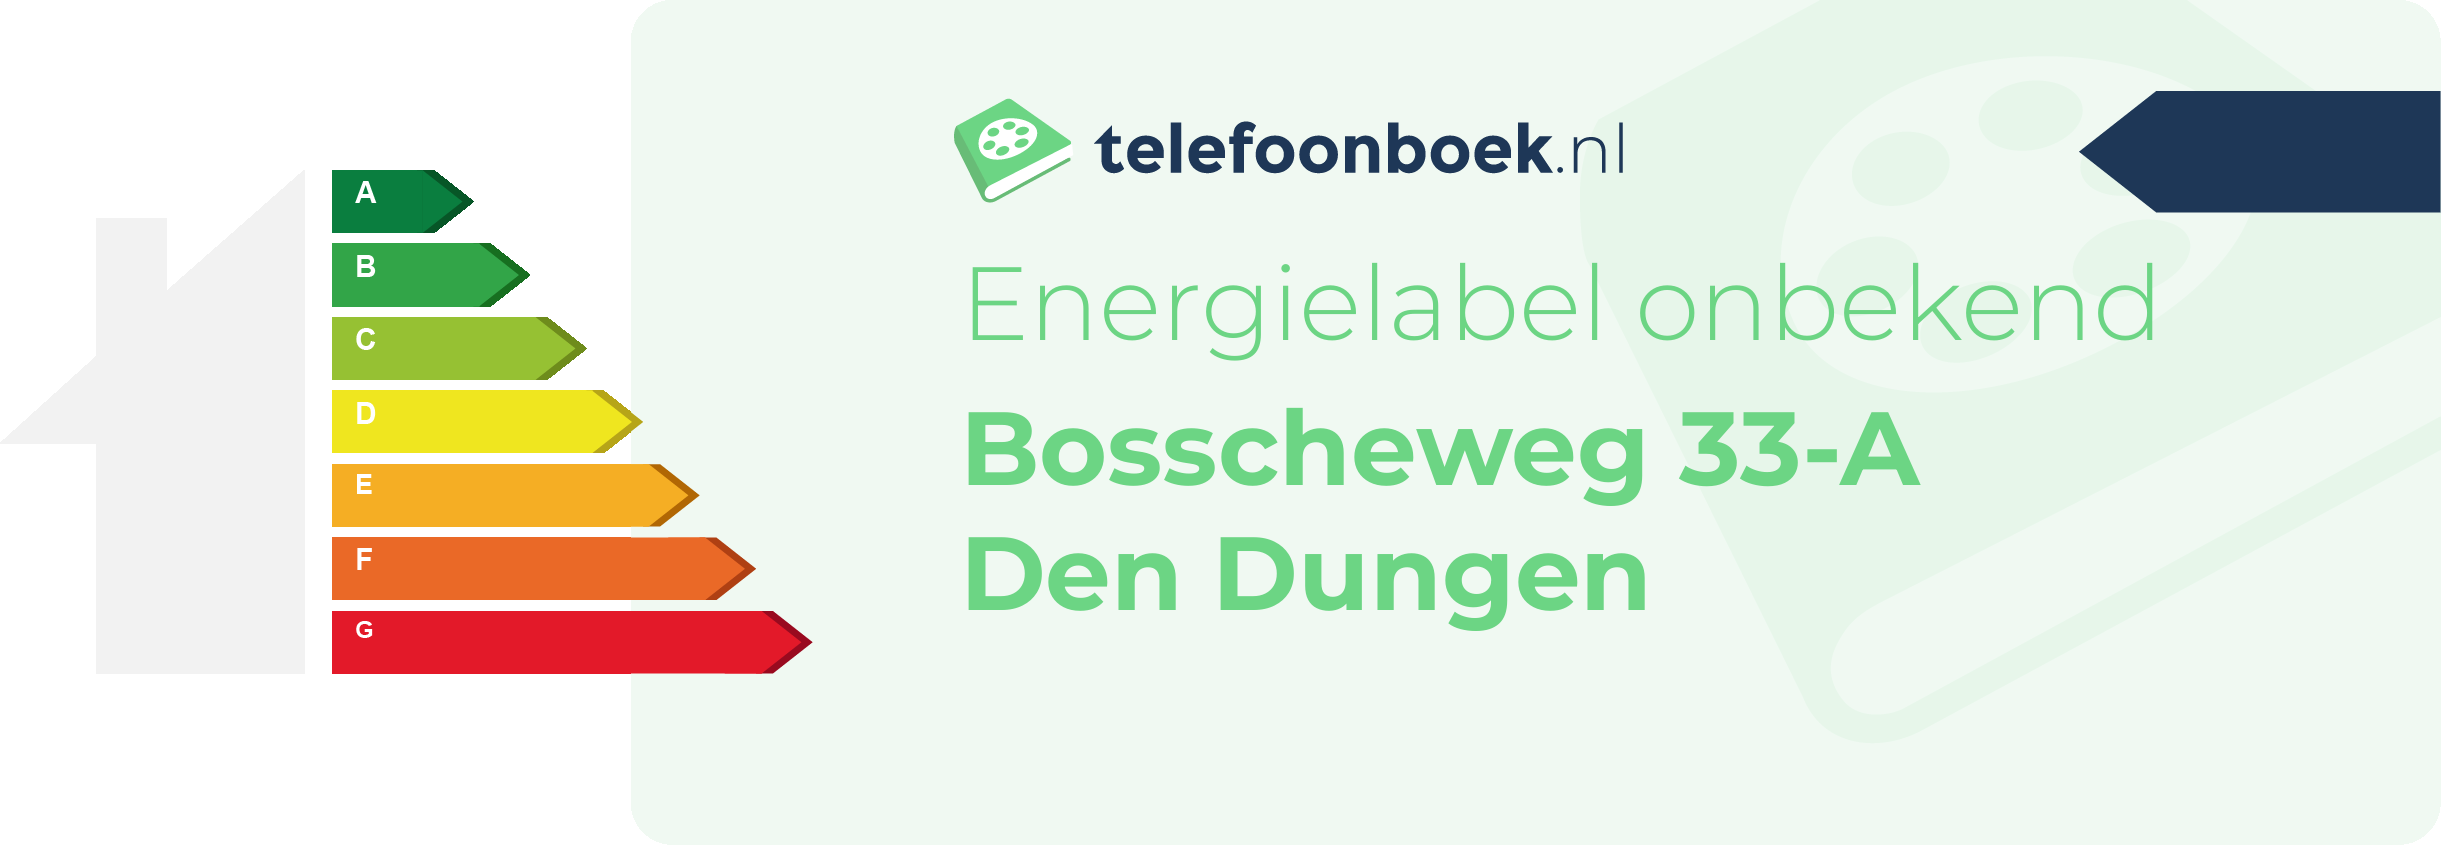 Energielabel Bosscheweg 33-A Den Dungen